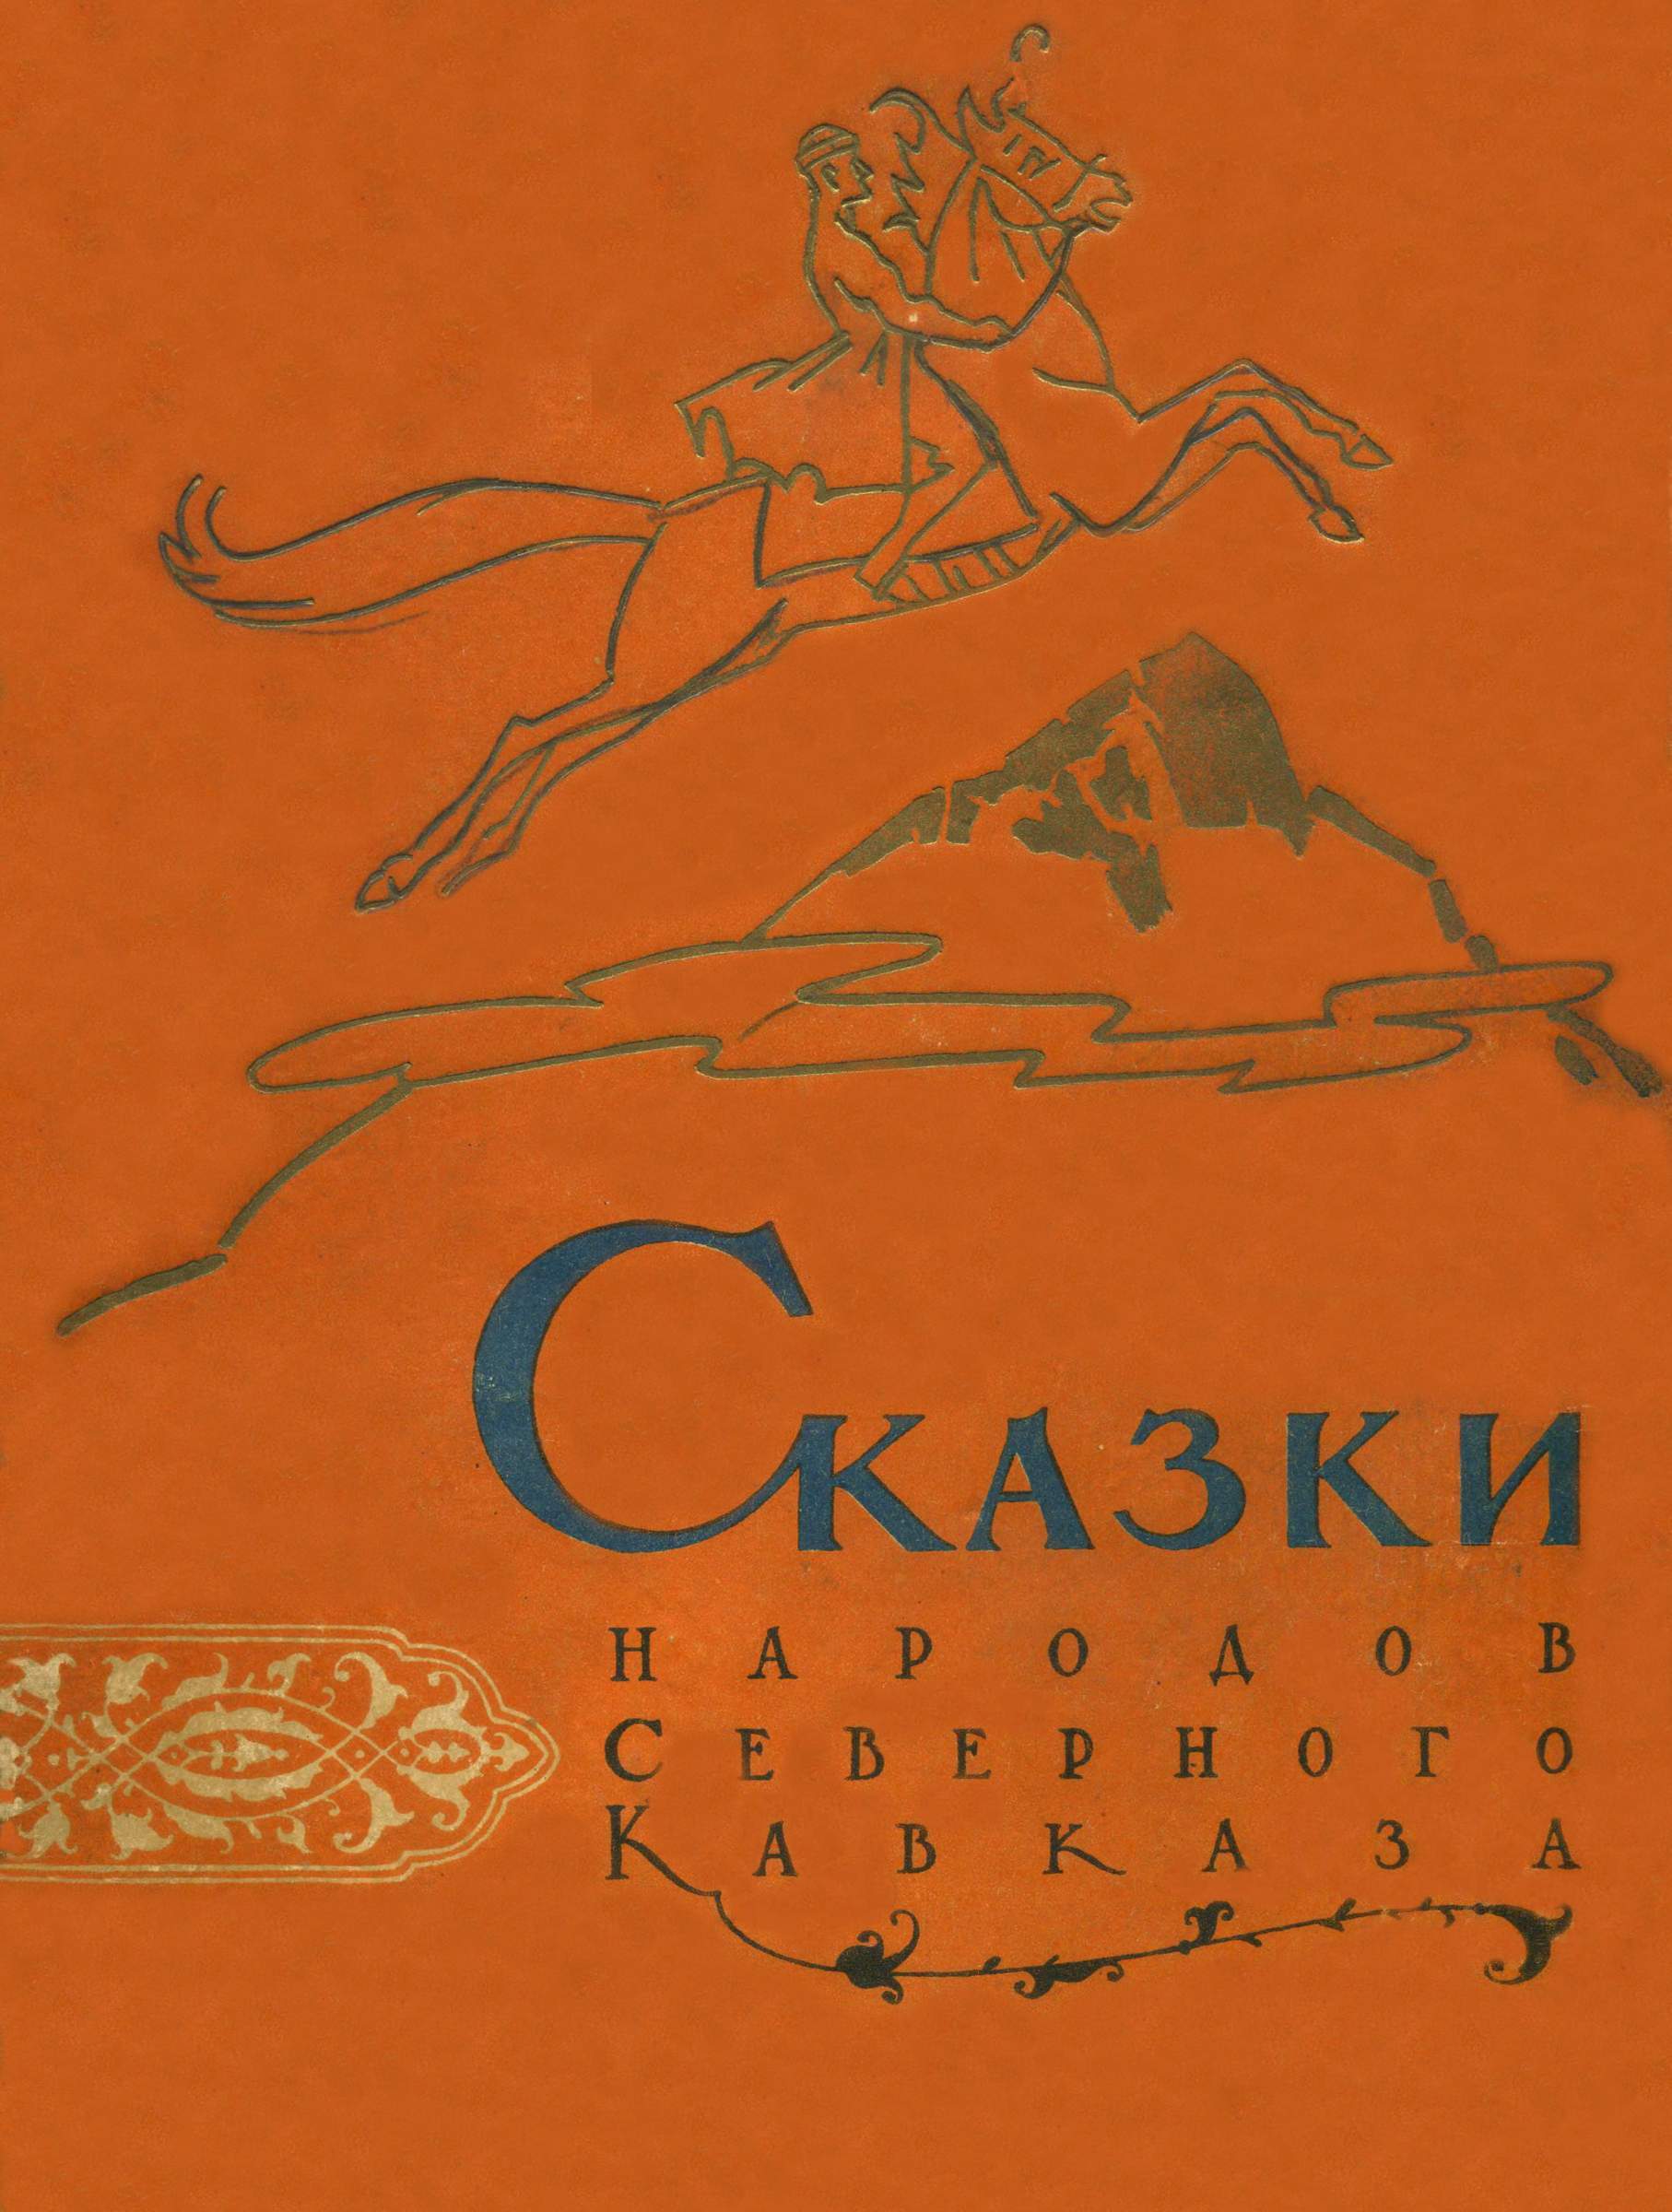 Сказки народов Северного Кавказа - Народные сказки